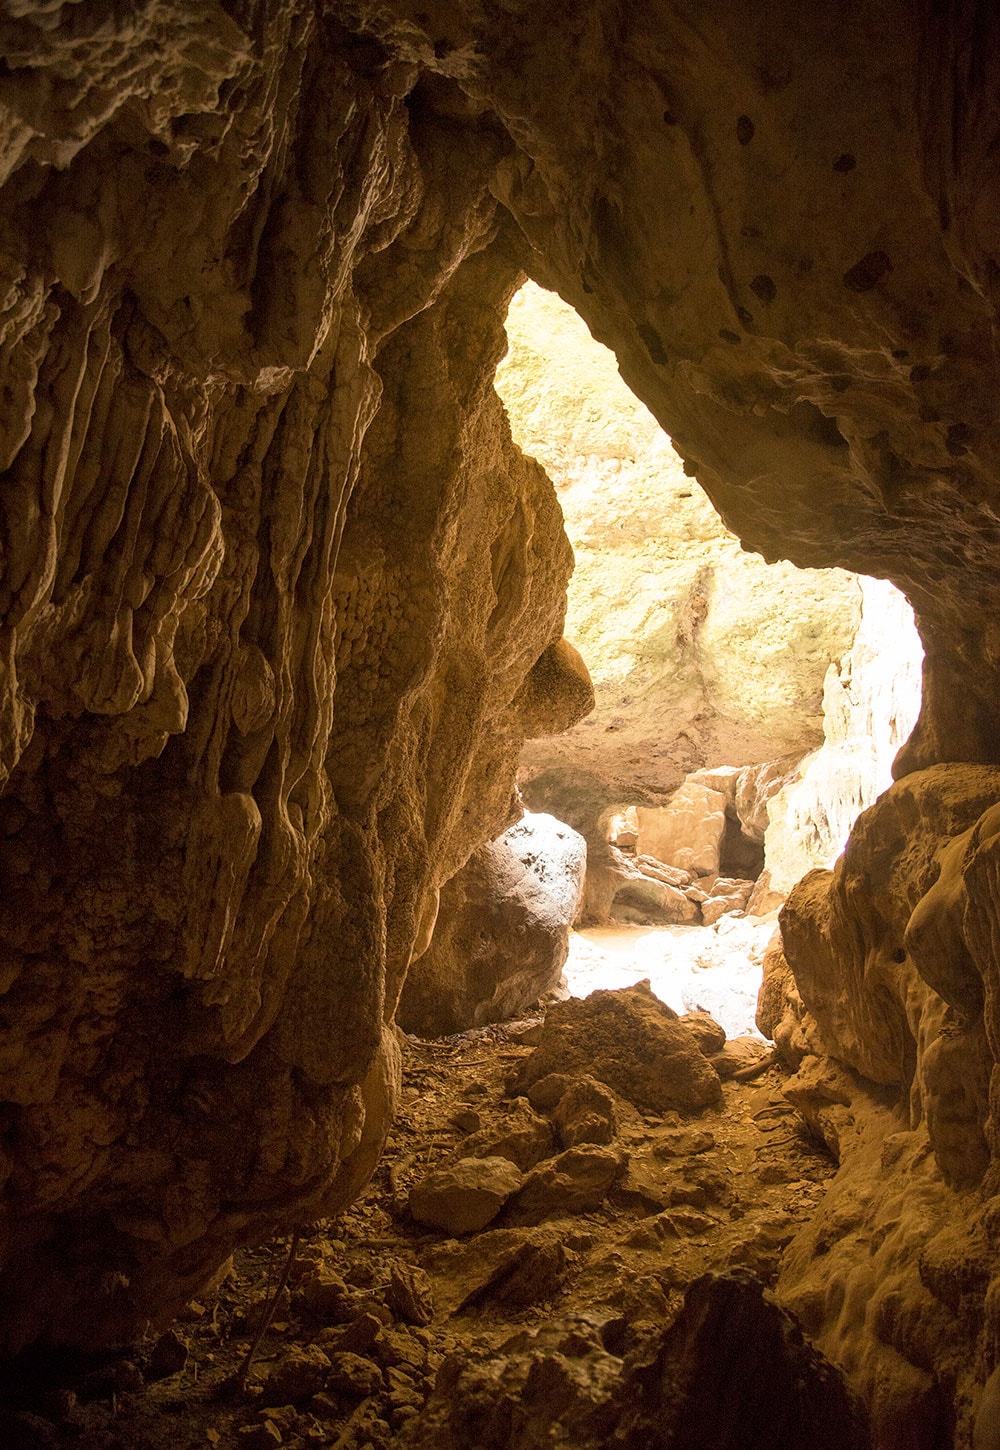 リゾートから車で約10分のところにある鏡の洞窟“バトゥチュルミン”